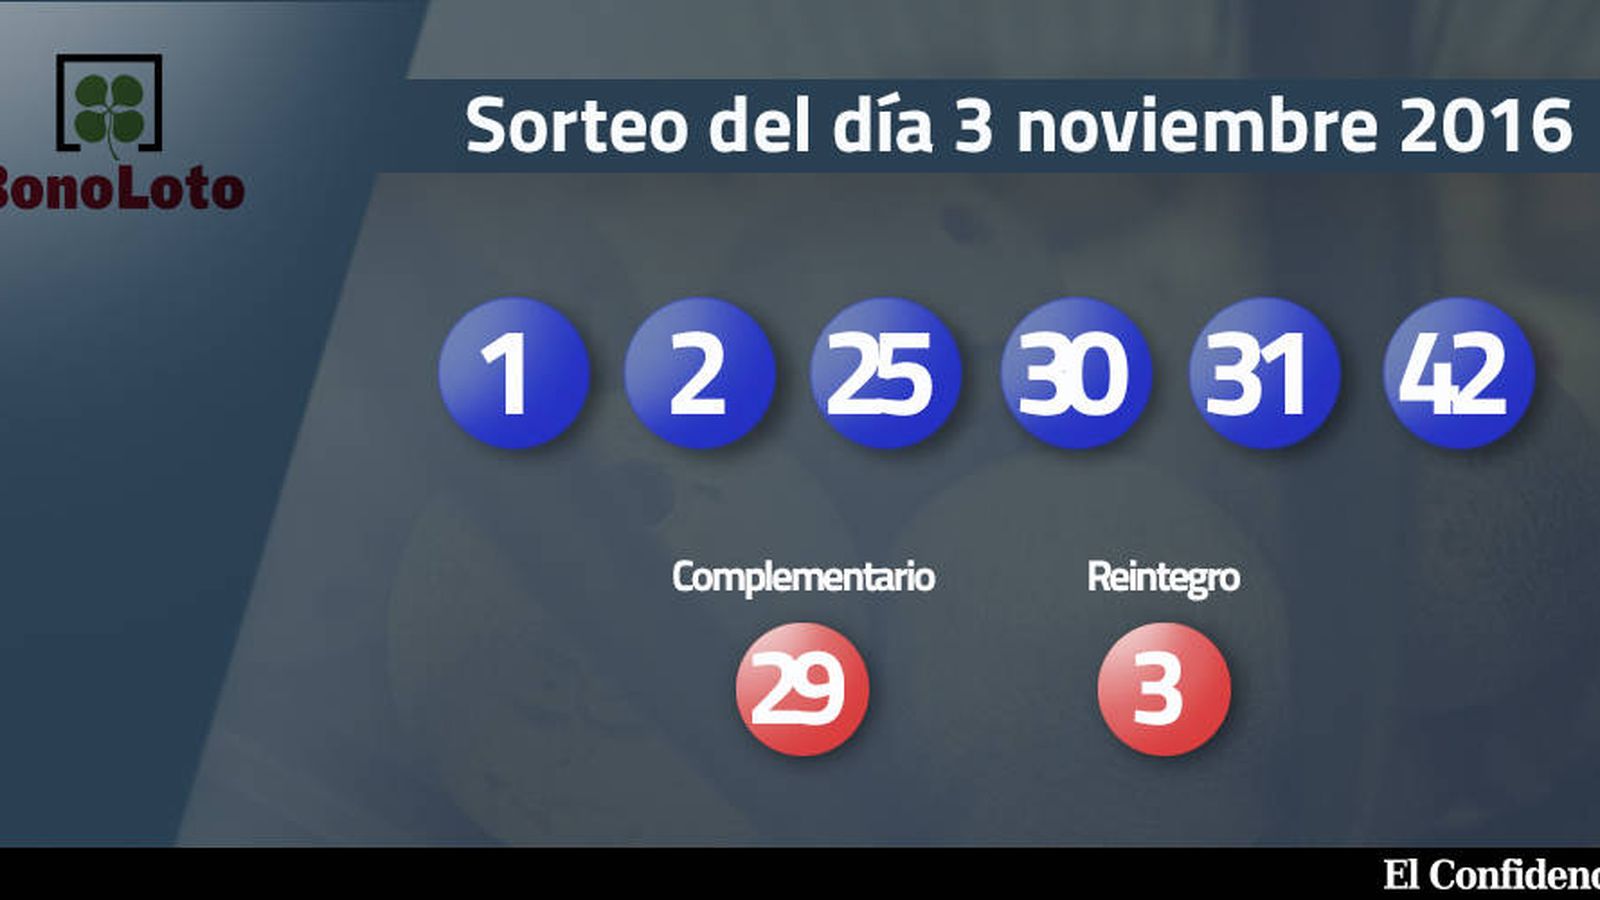 Foto: Resultados del sorteo de la Bonoloto del 3 noviembre 2016 (EC)